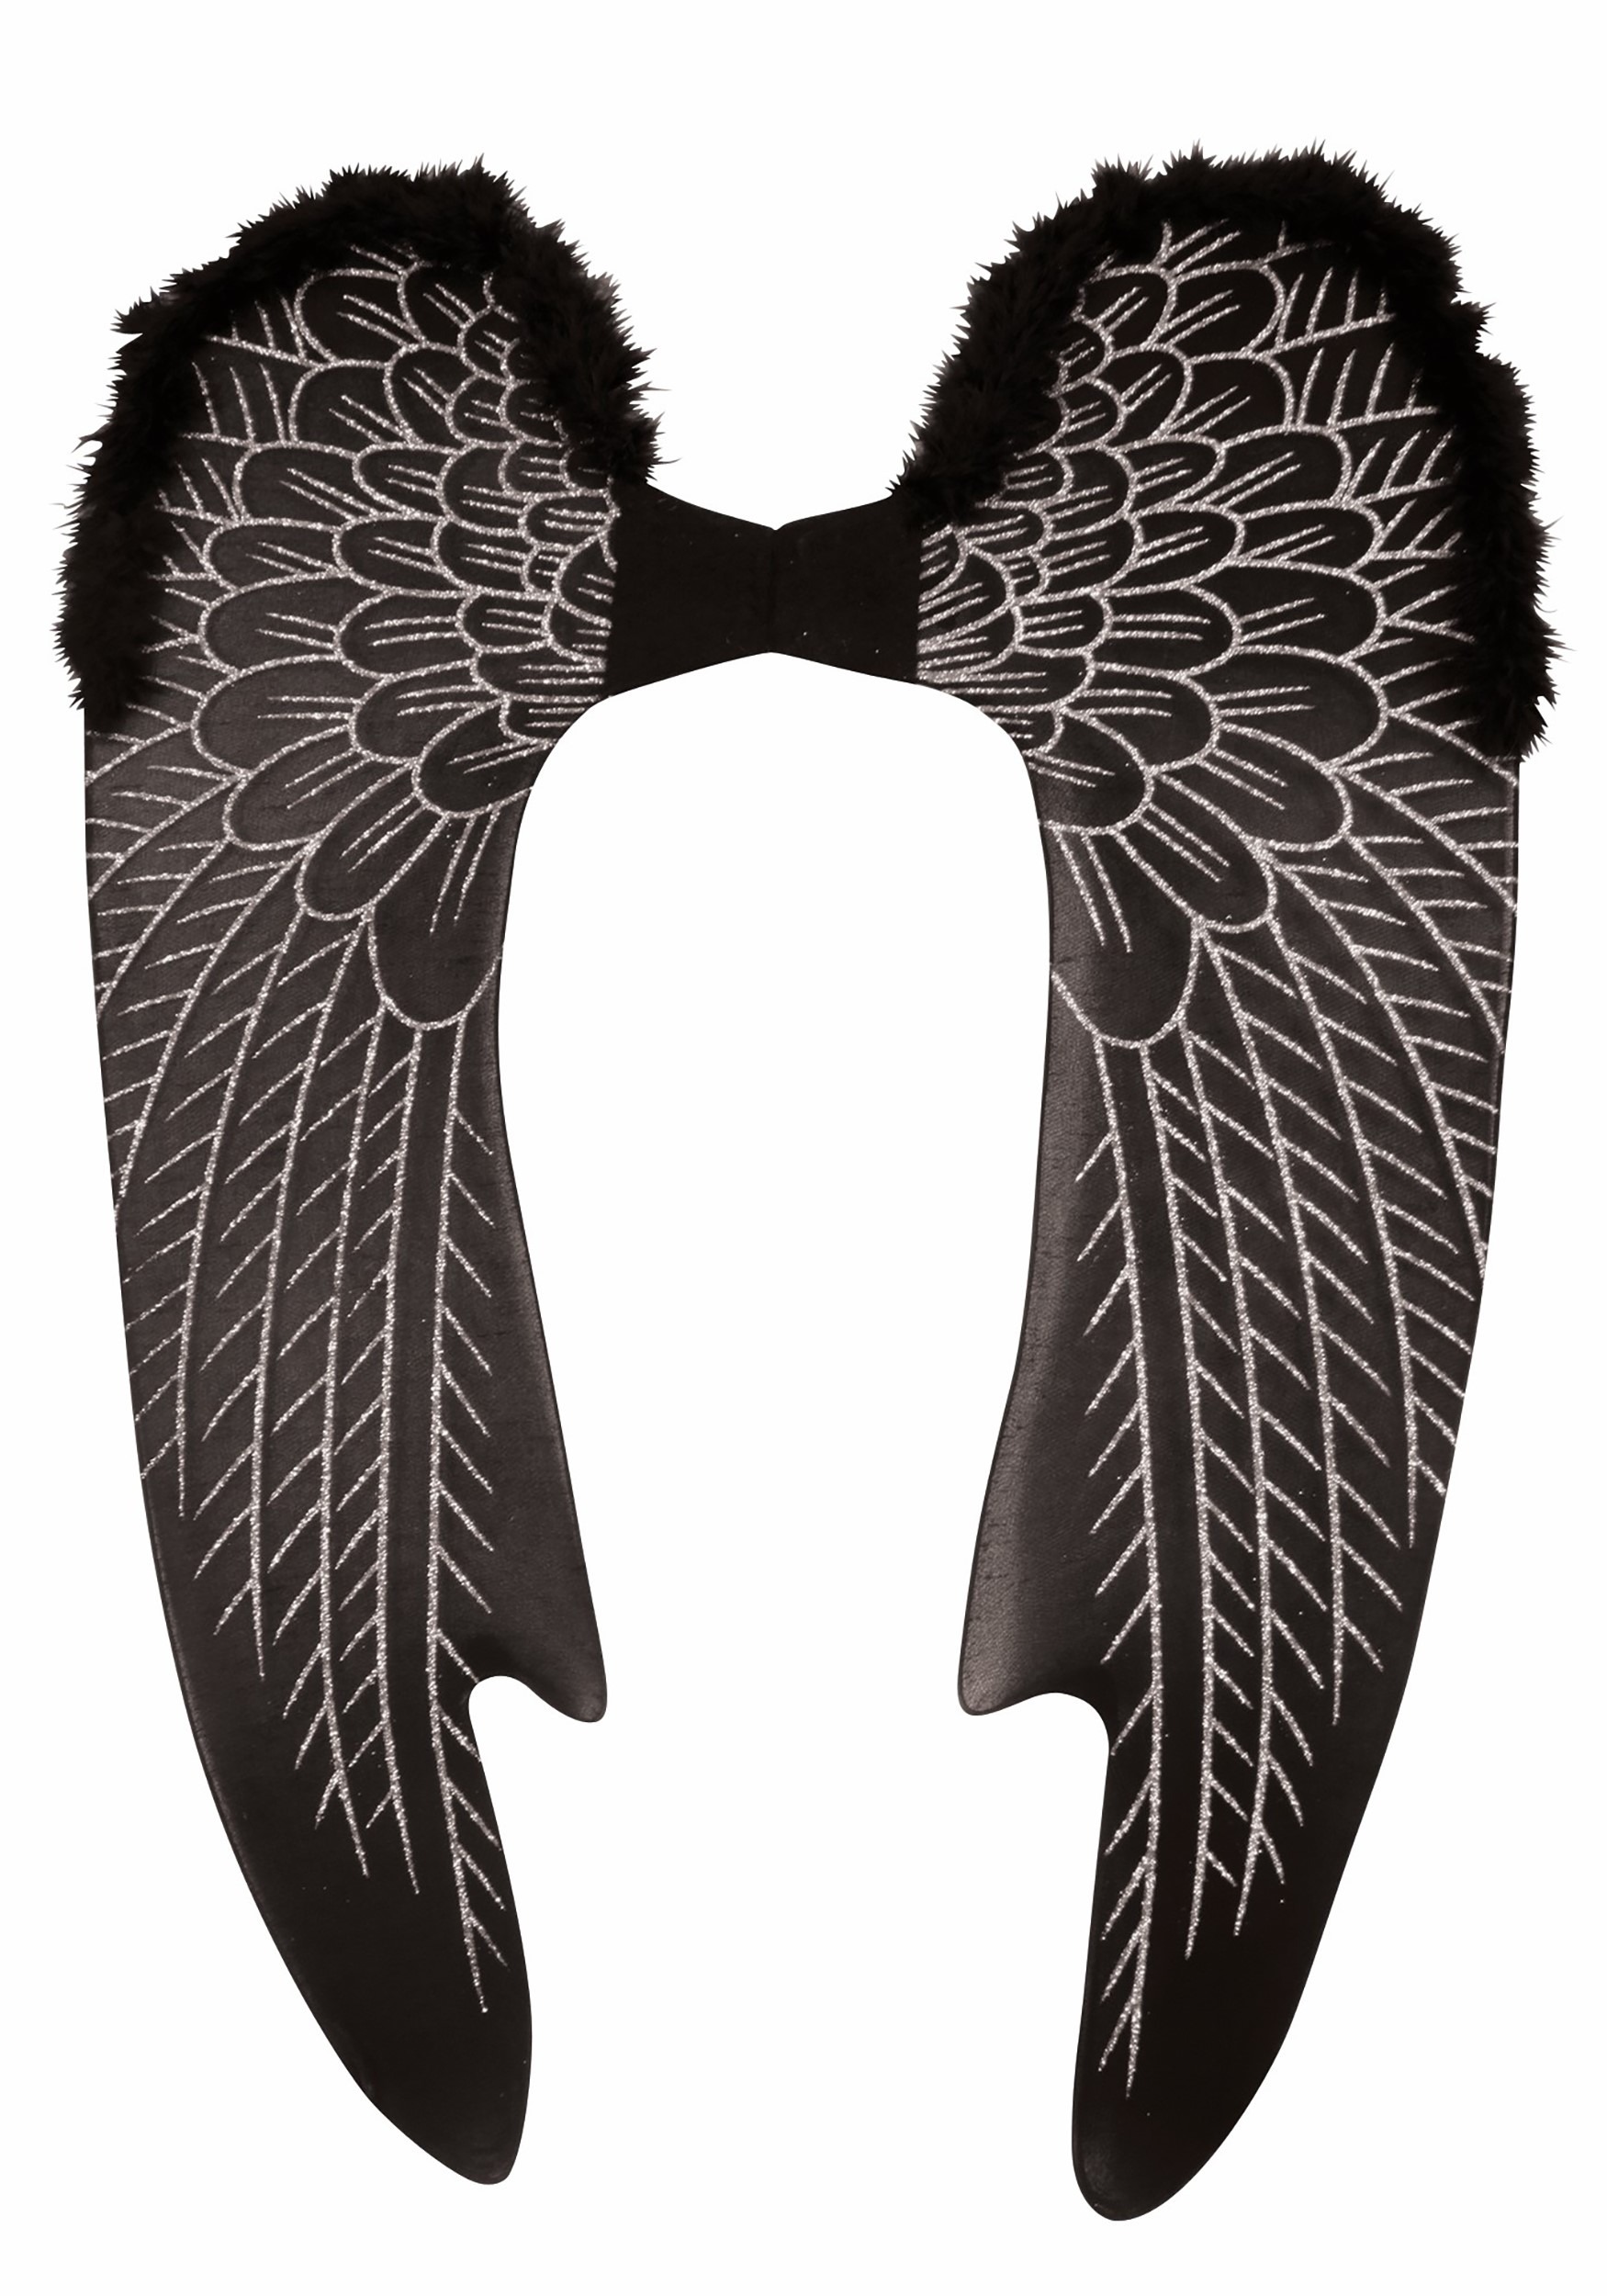 Dark Angel Black angel art black angel wings golden angel art golden angel wings kids room decor girl birthday gift angel statue angel art